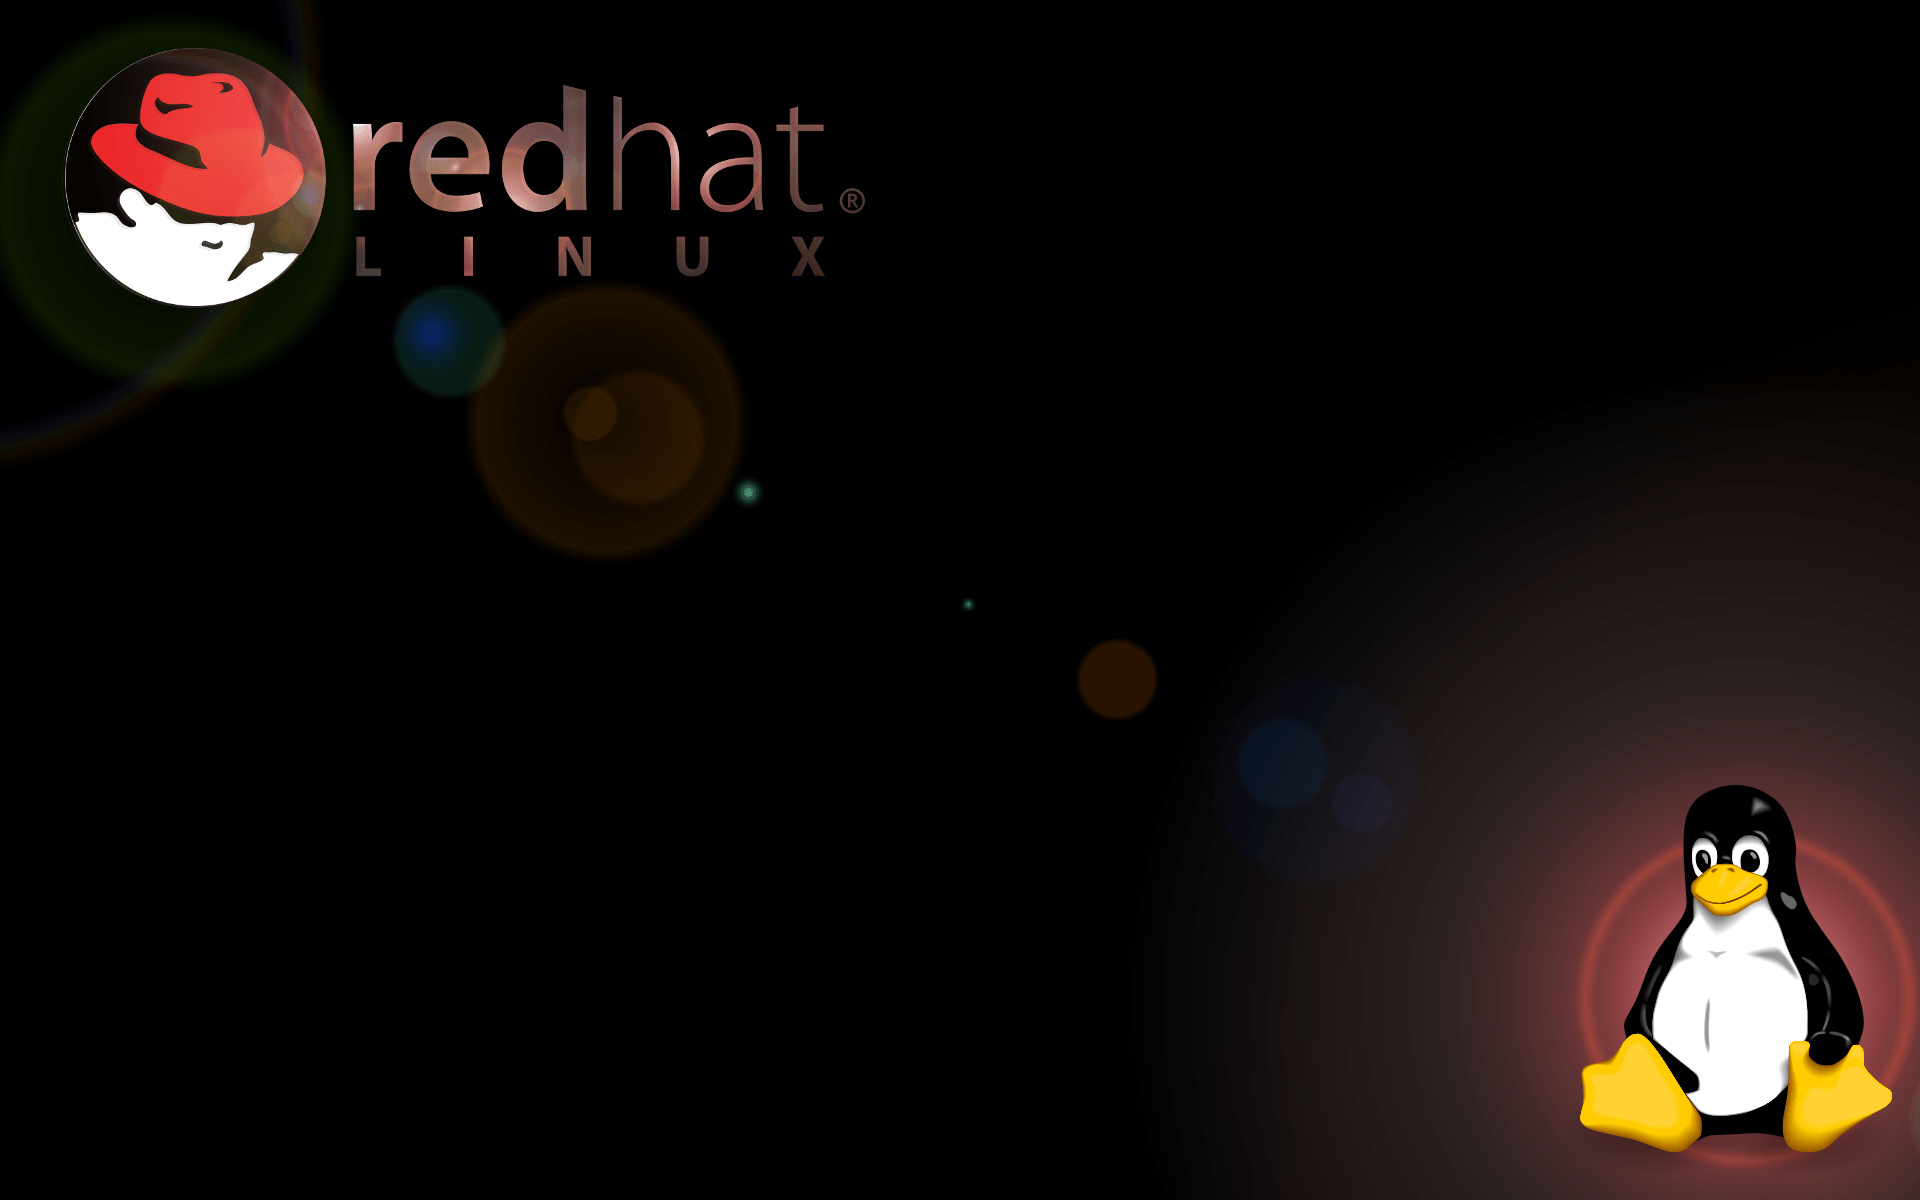 Ред хат. Редхат линукс. Обои на рабочий стол Linux. Обои Red hat. Red hat Enterprise Linux.